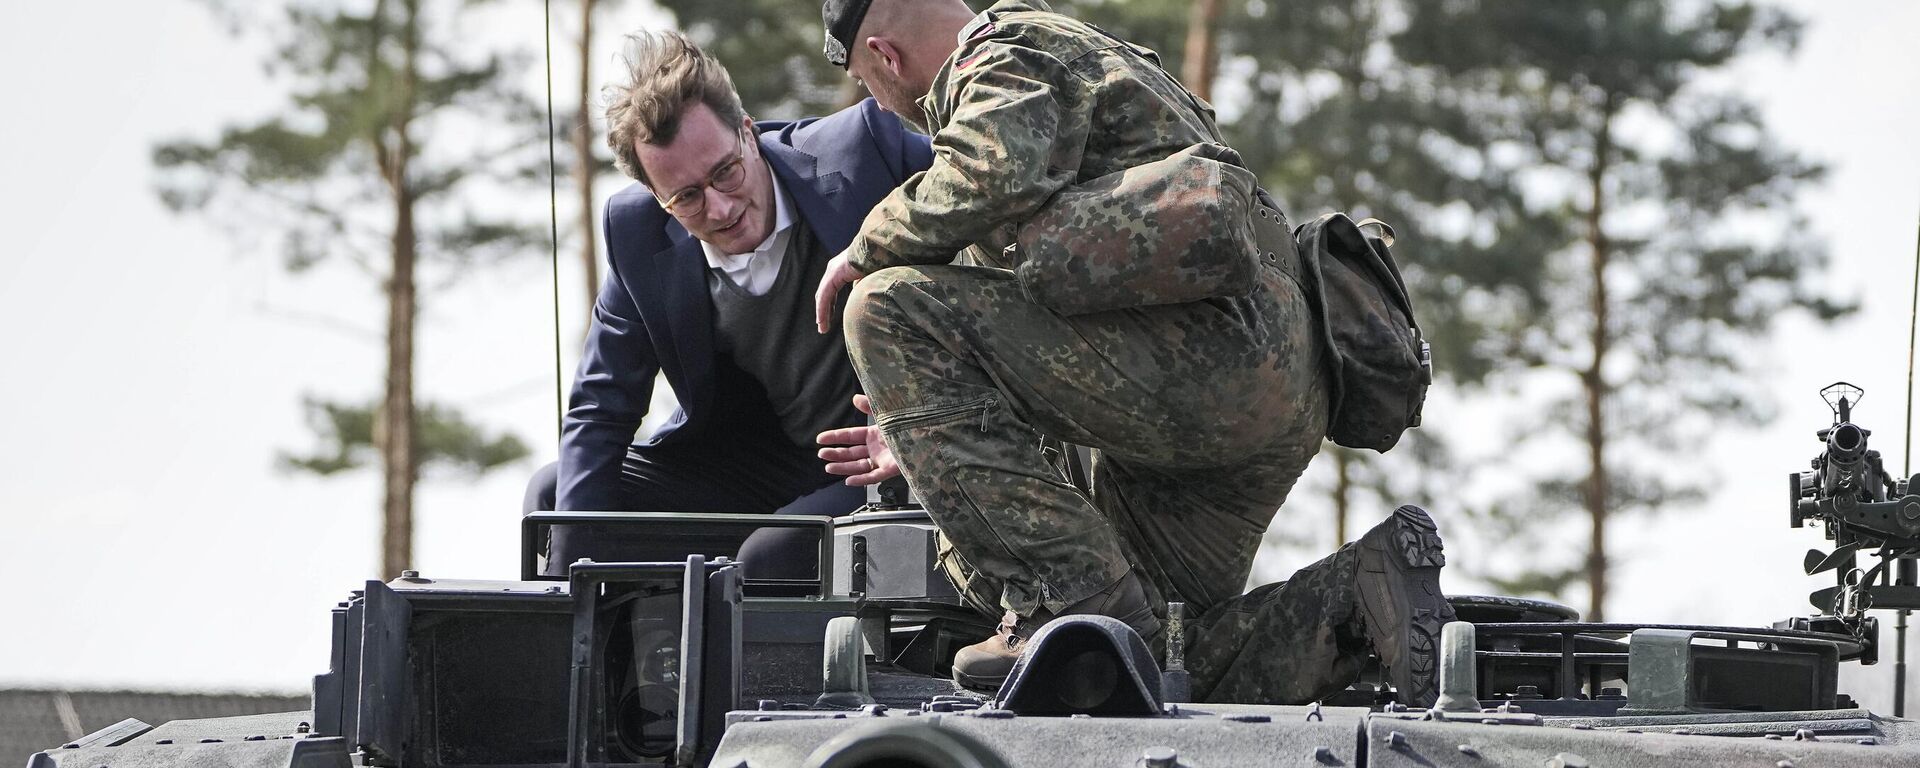 O governador Hendrick Wuest senta-se em um tanque Leopard durante uma visita à base militar Field Marshal Rommel Barracks em Augustdorf, Alemanha, 30 de março de 2022 - Sputnik Brasil, 1920, 05.01.2023